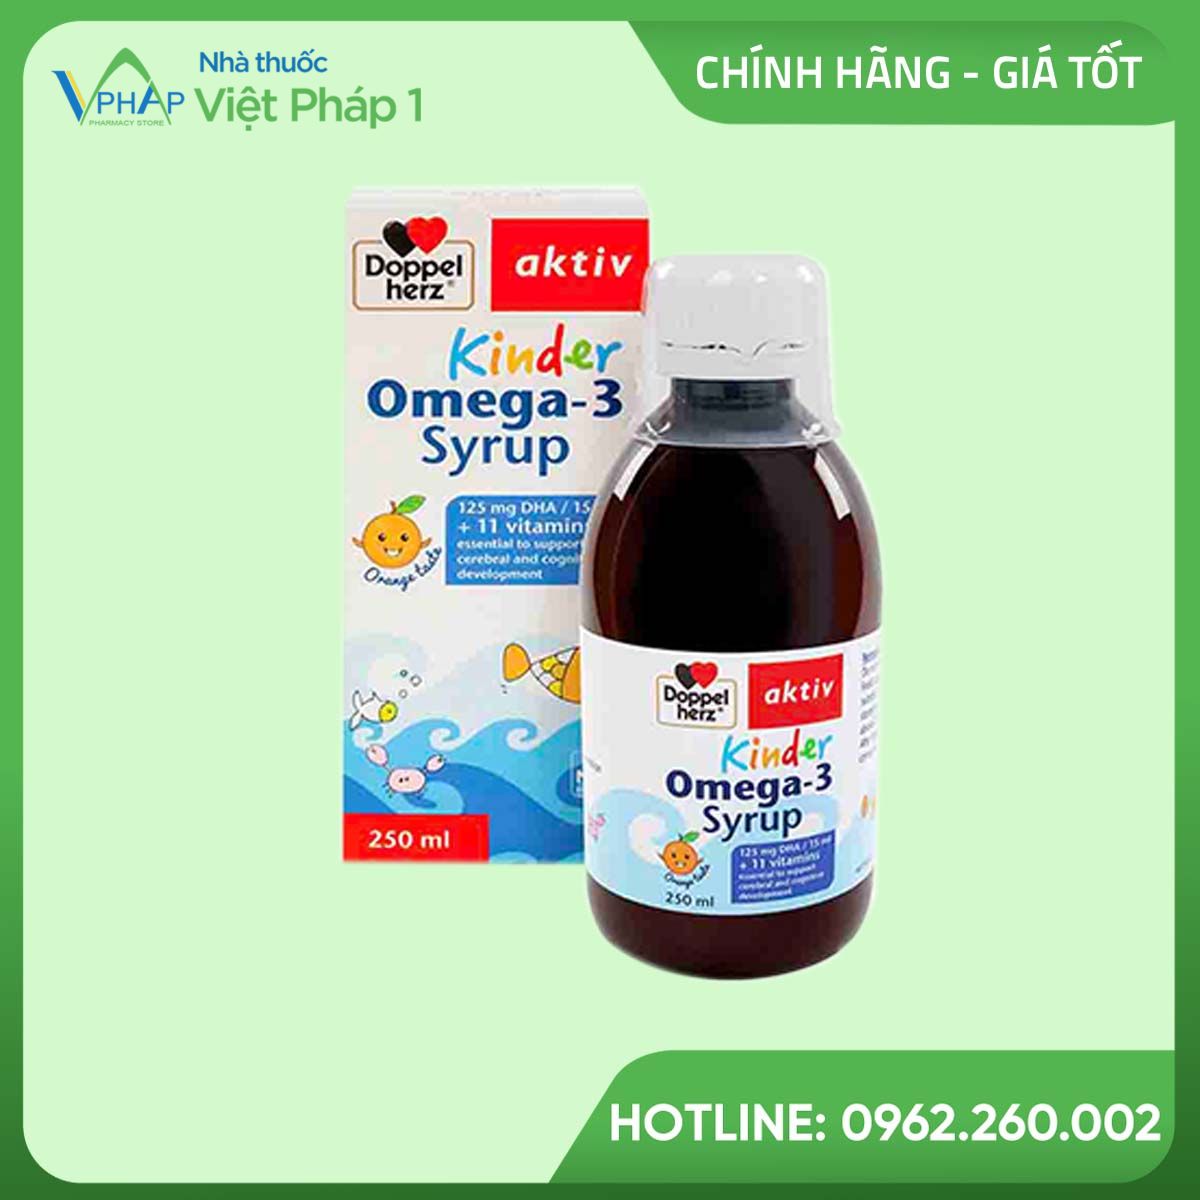 Hình ảnh sản phẩm Kinder Omega-3 Syrup